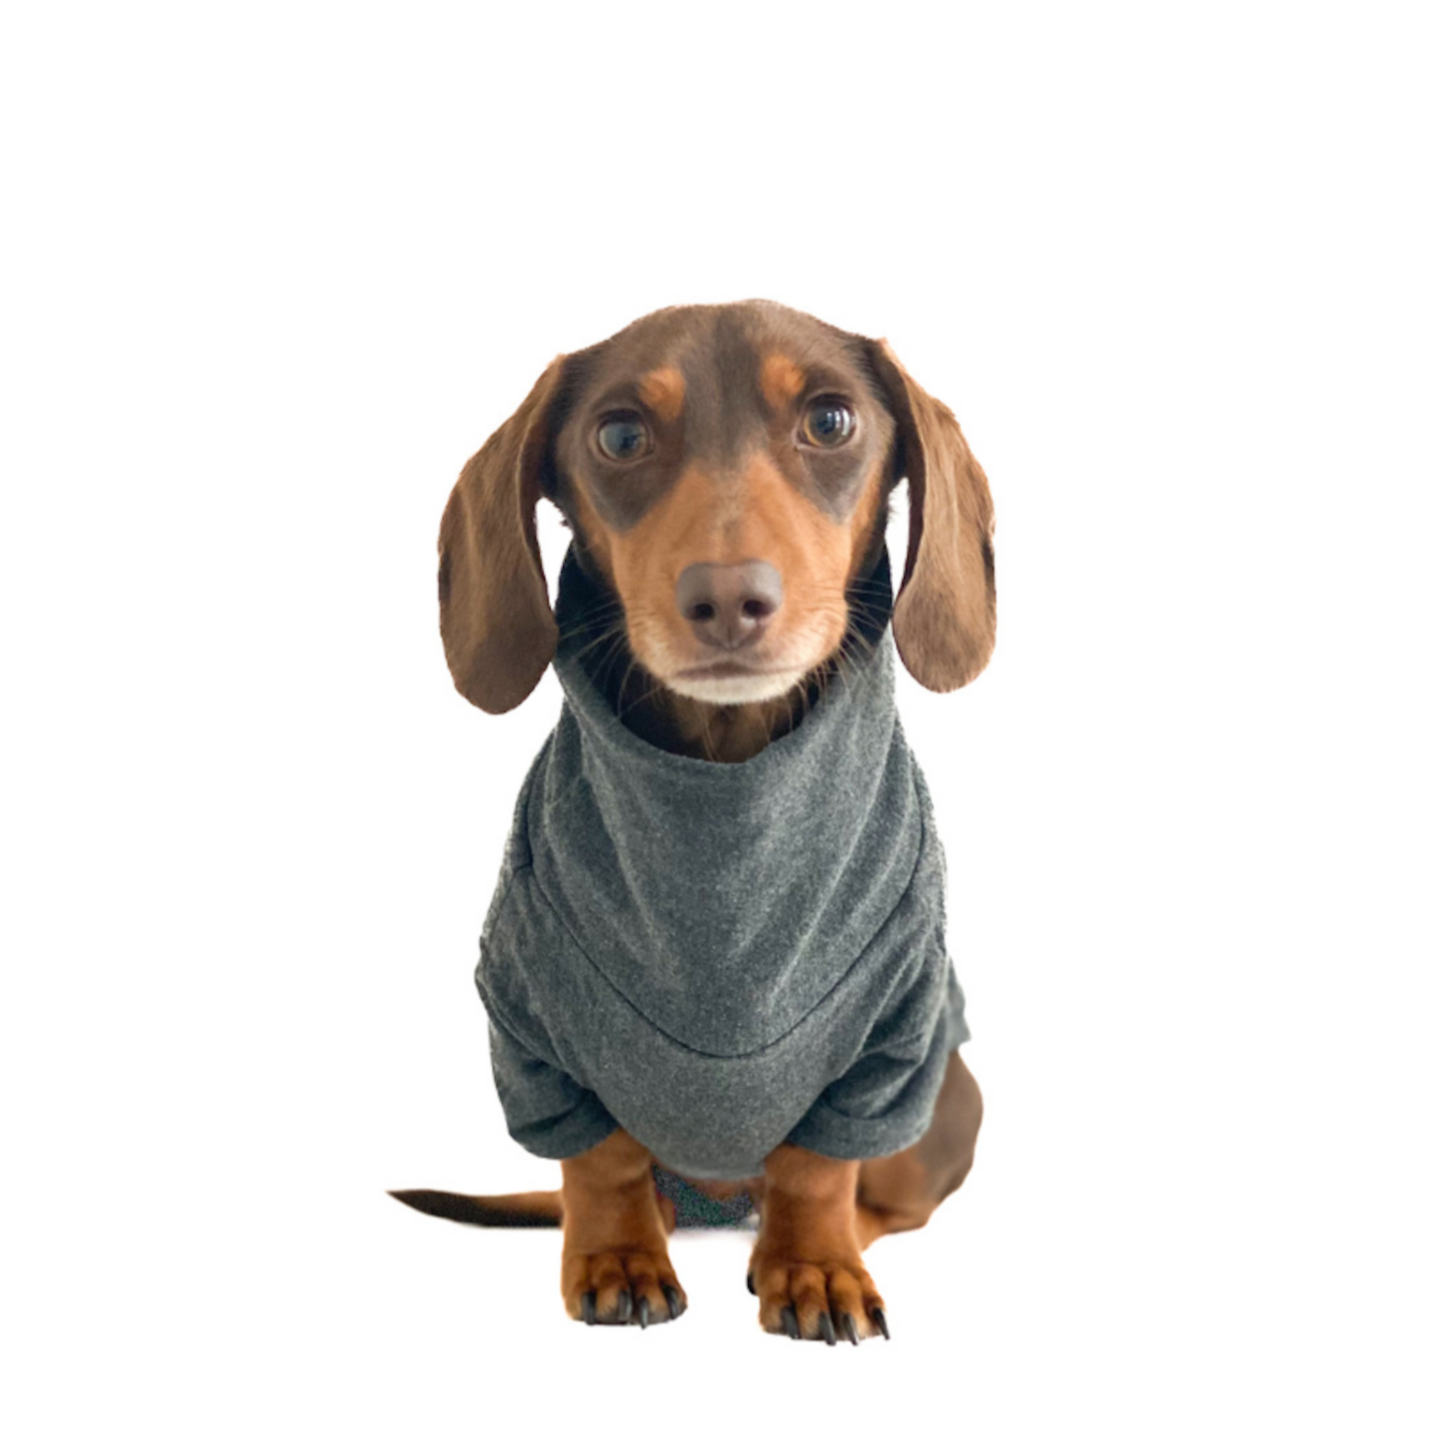 Dachshund Turtleneck Sweater (Fleece) - Charcoal